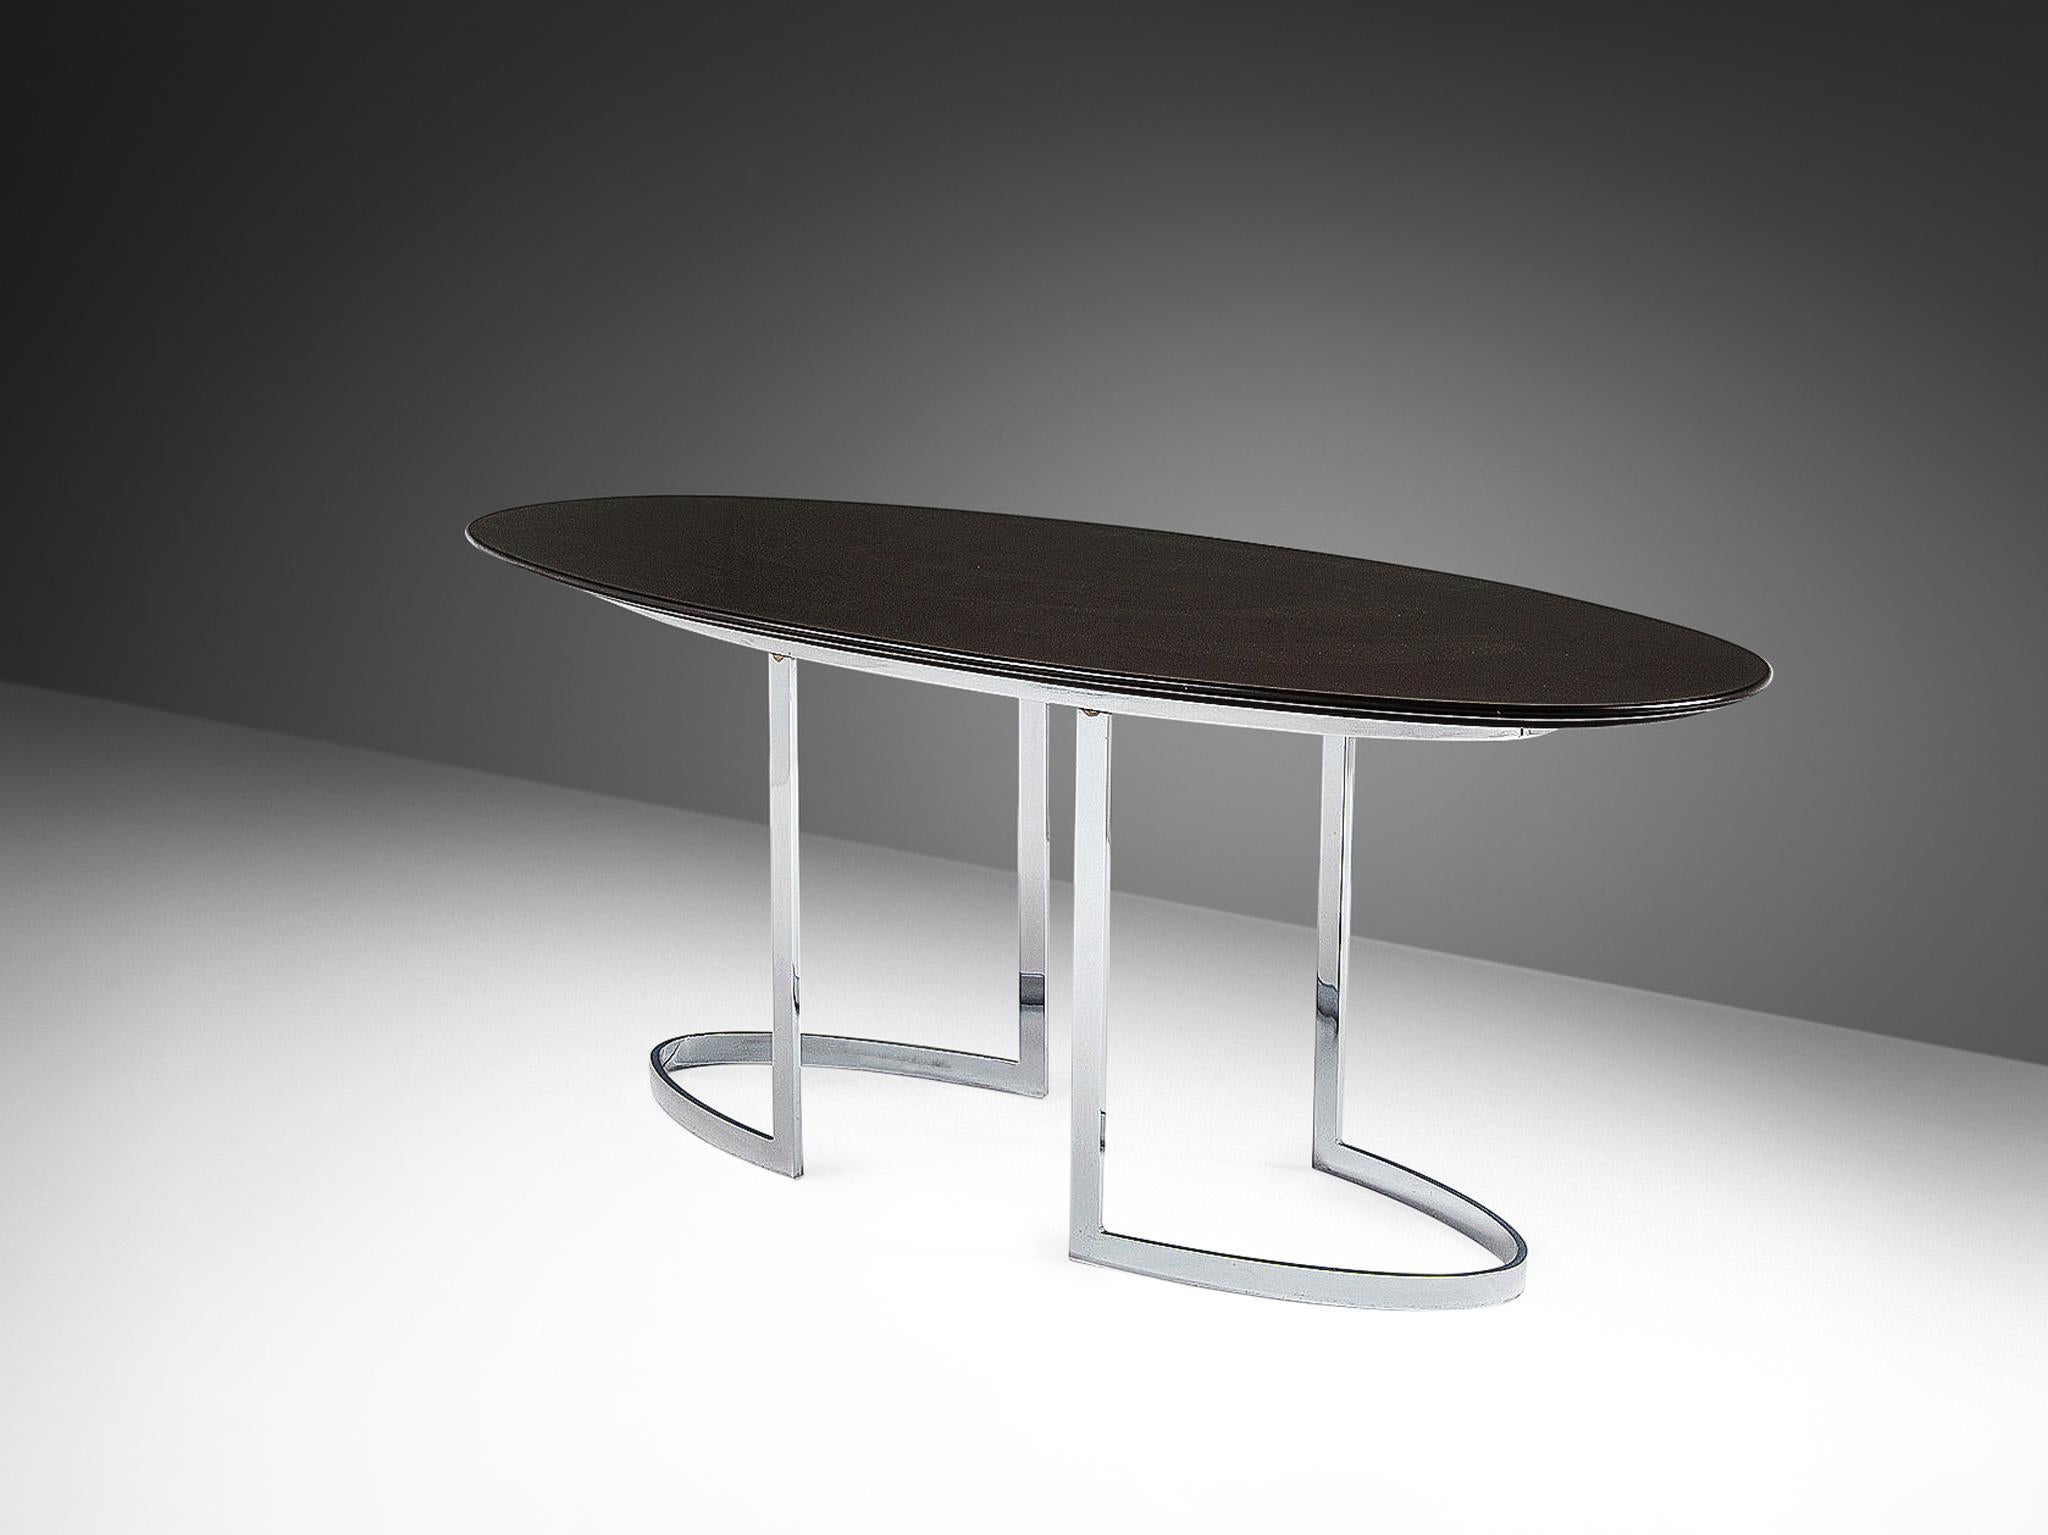 Cidue, table de salle à manger, acier chromé et bois laqué, Italie, années 1970. 

Le design de cette table de salle à manger convainc visuellement par son aspect équilibré et sa construction stable. La base est constituée de bandes d'acier chromé